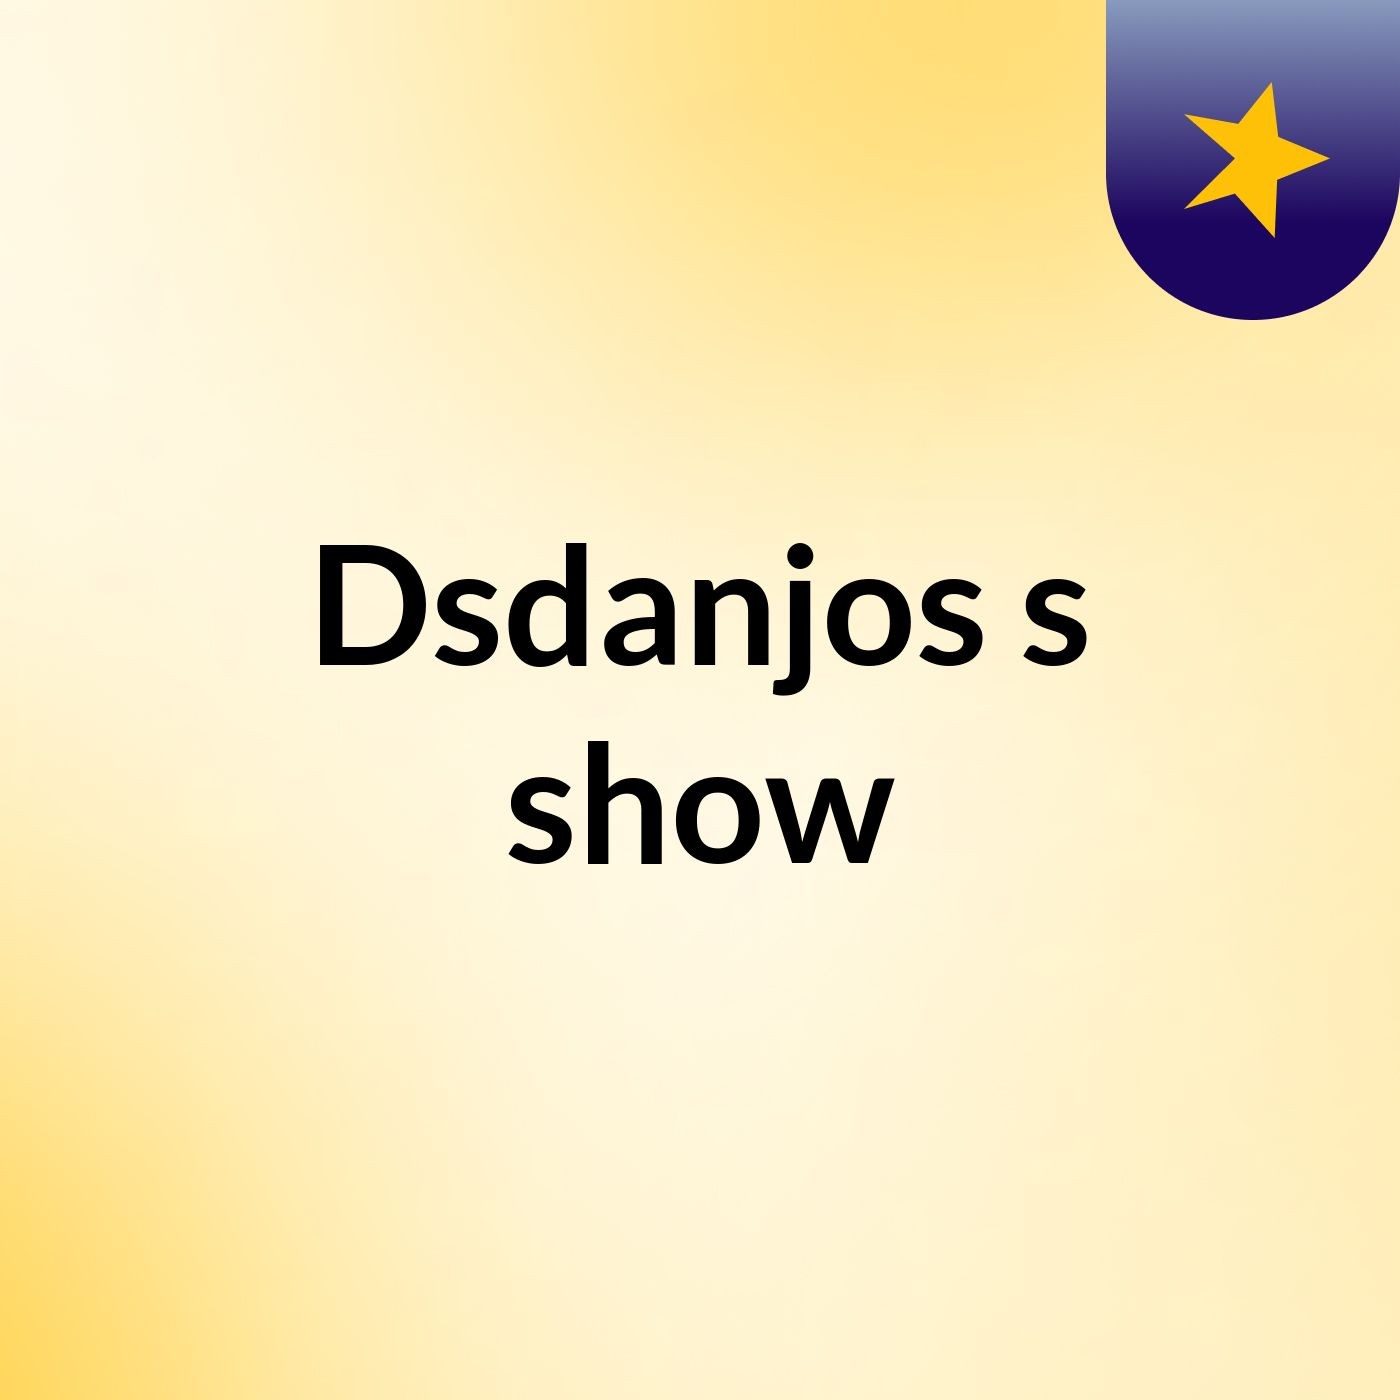 Dsdanjos's show